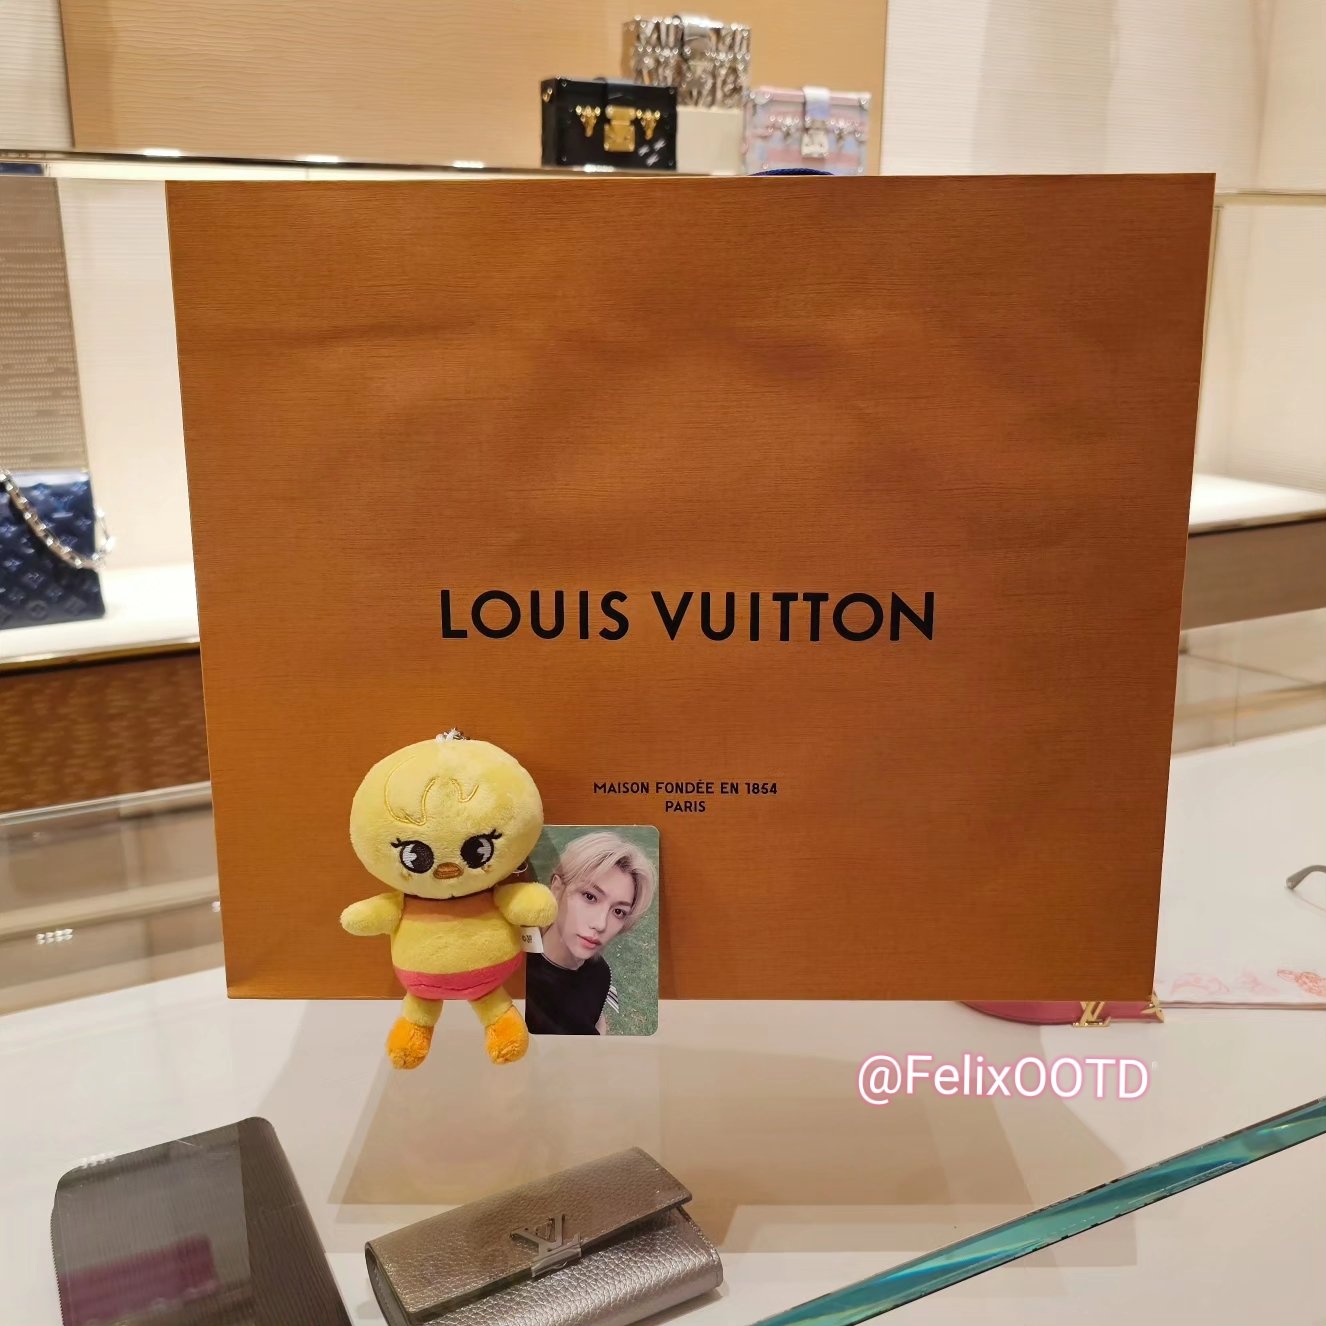 Louis Vuitton on X: Felix for Louis Vuitton. The Maison is